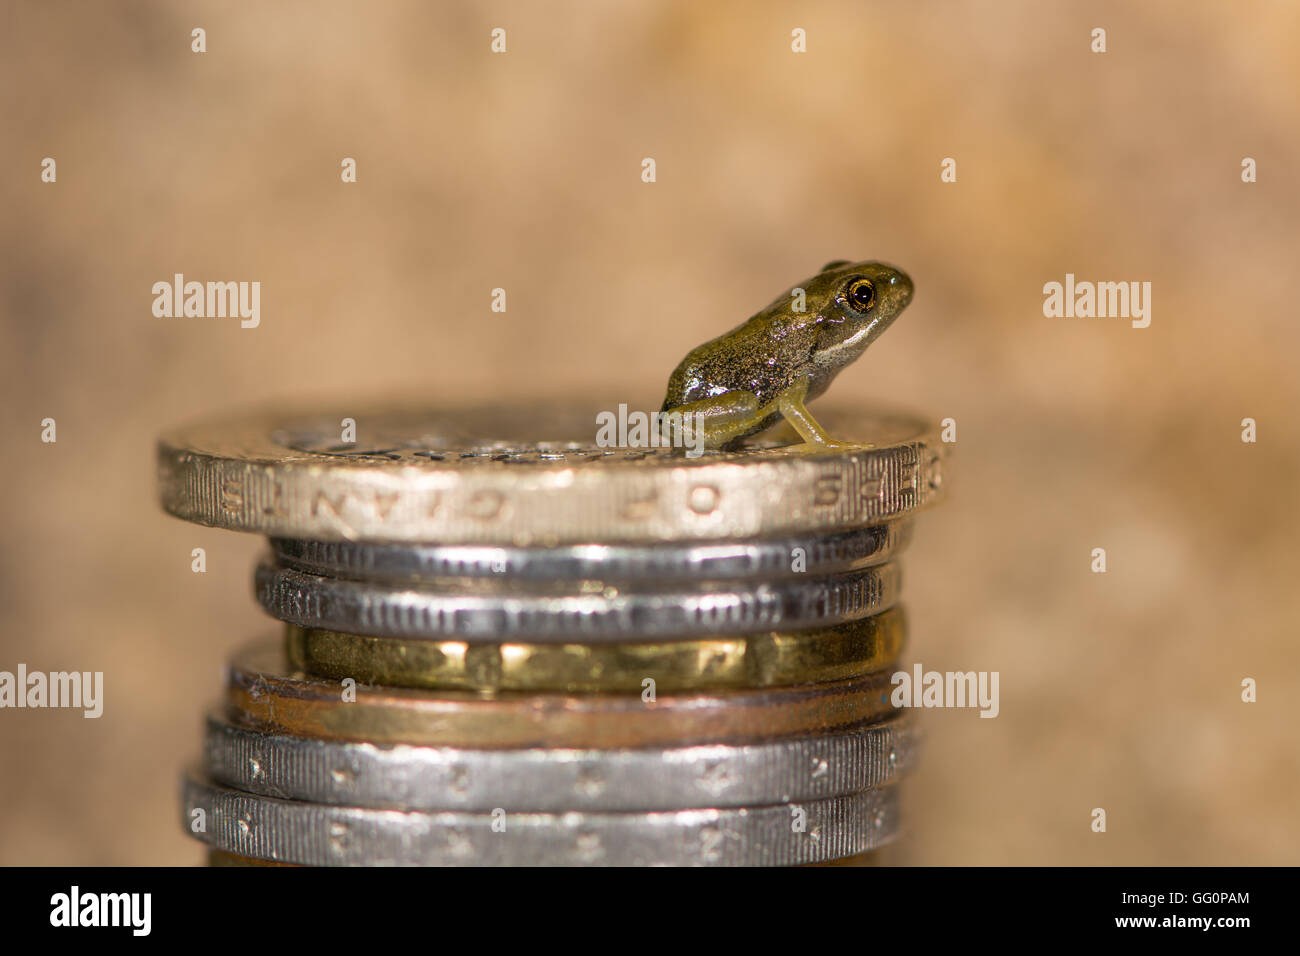 Rana comune (Rana temporaria) froglet sulla pila di monete. Tiny baby frog con monete per mostrare di piccole dimensioni, circa 8 mm di lunghezza Foto Stock